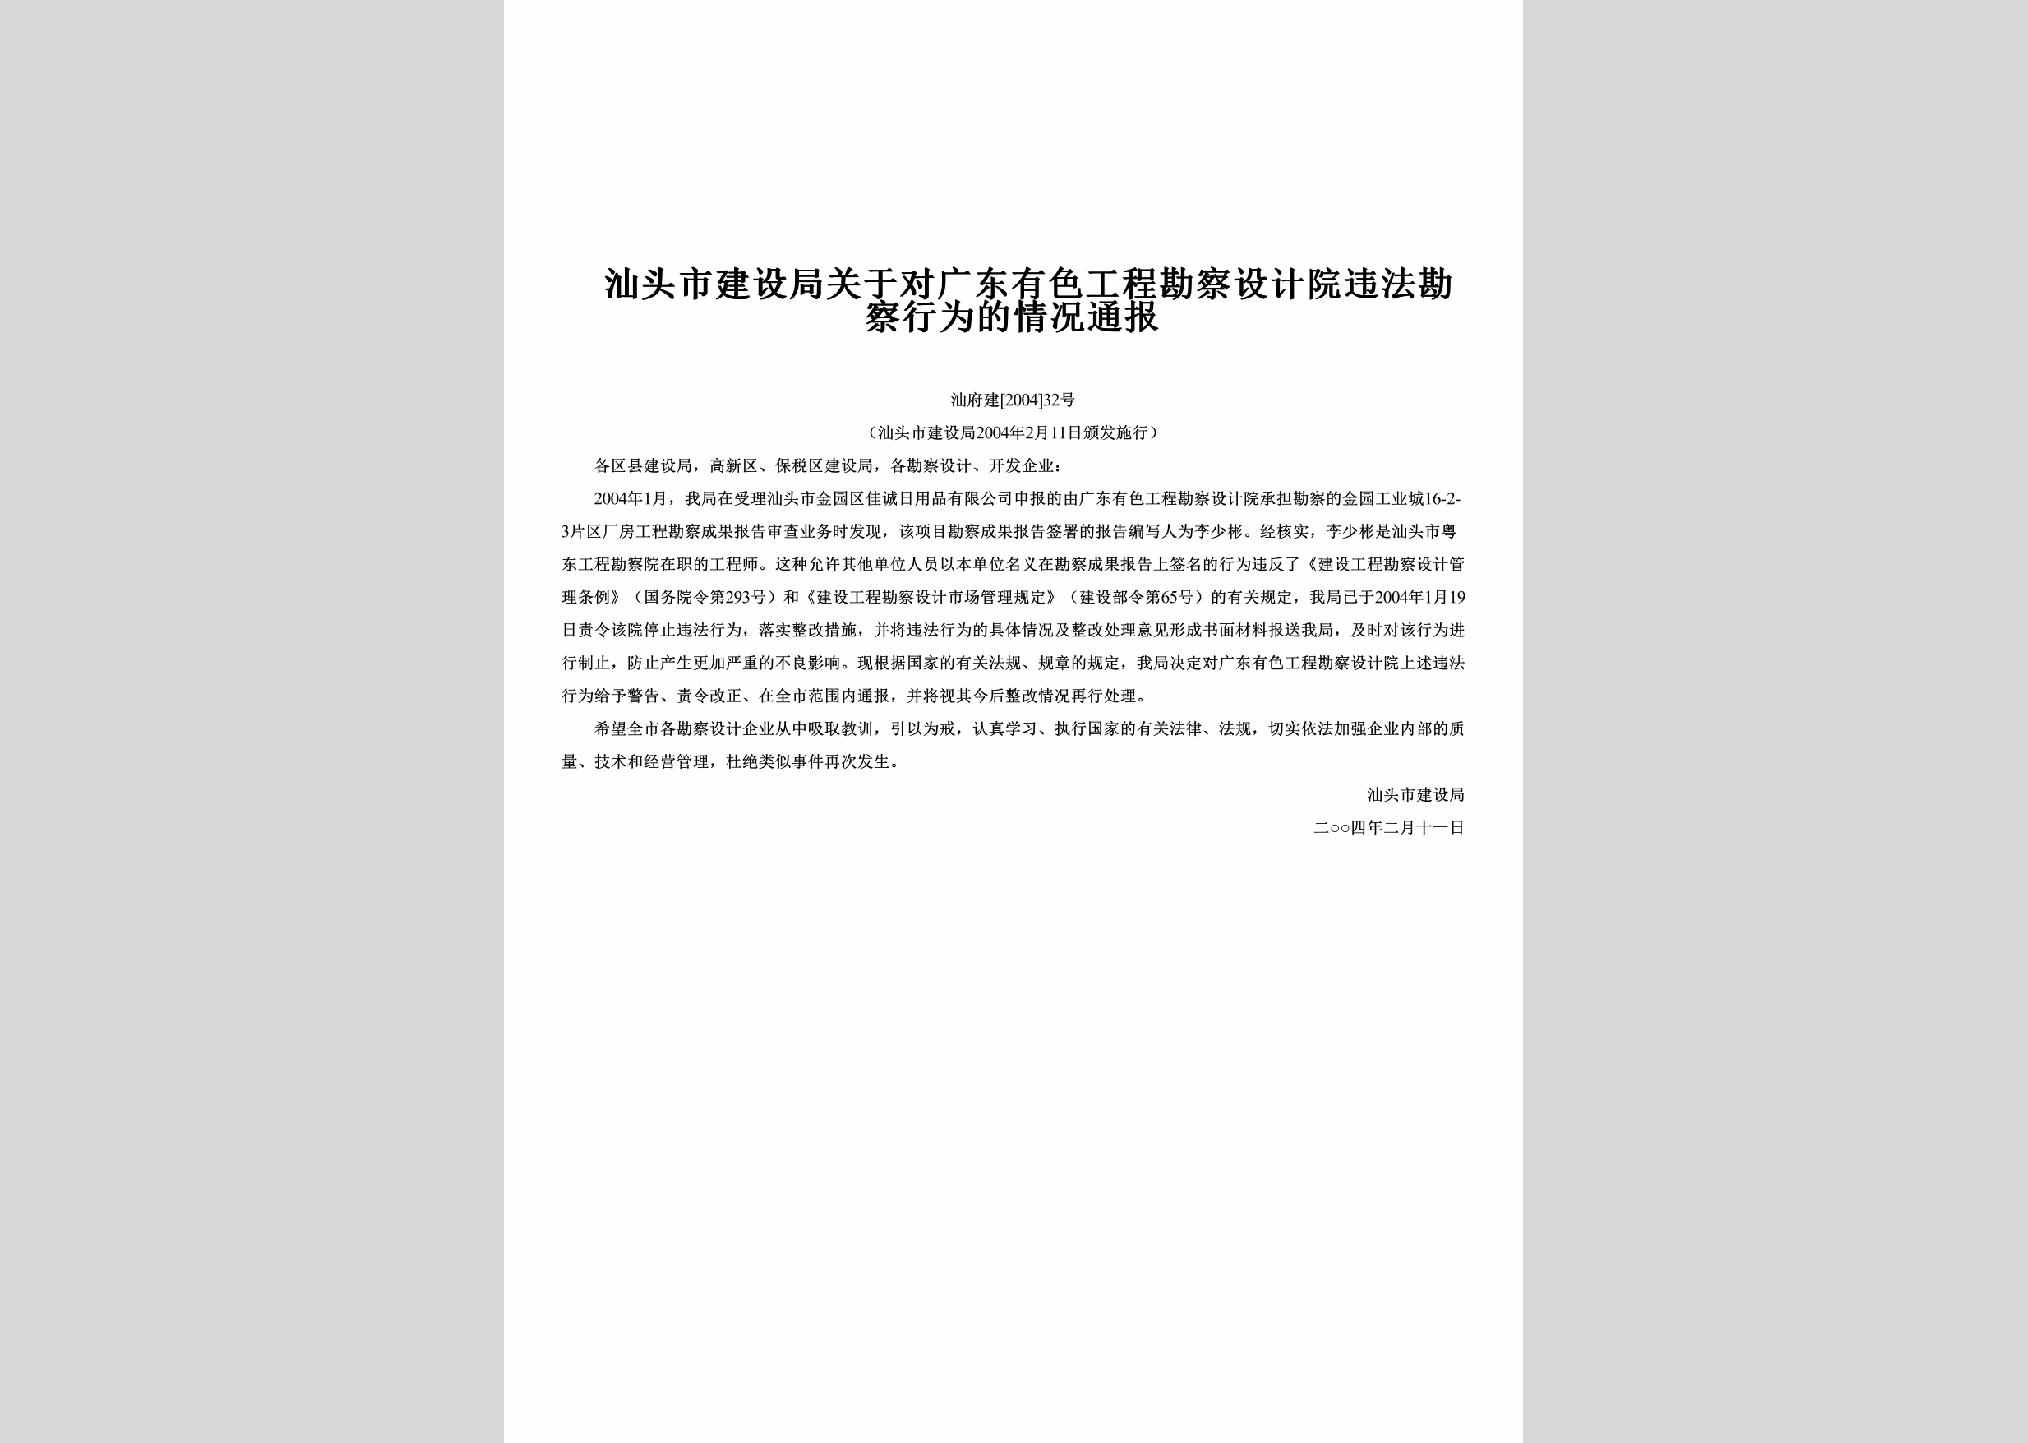 汕府建[2004]32号：关于对广东有色工程勘察设计院违法勘察行为的情况通报